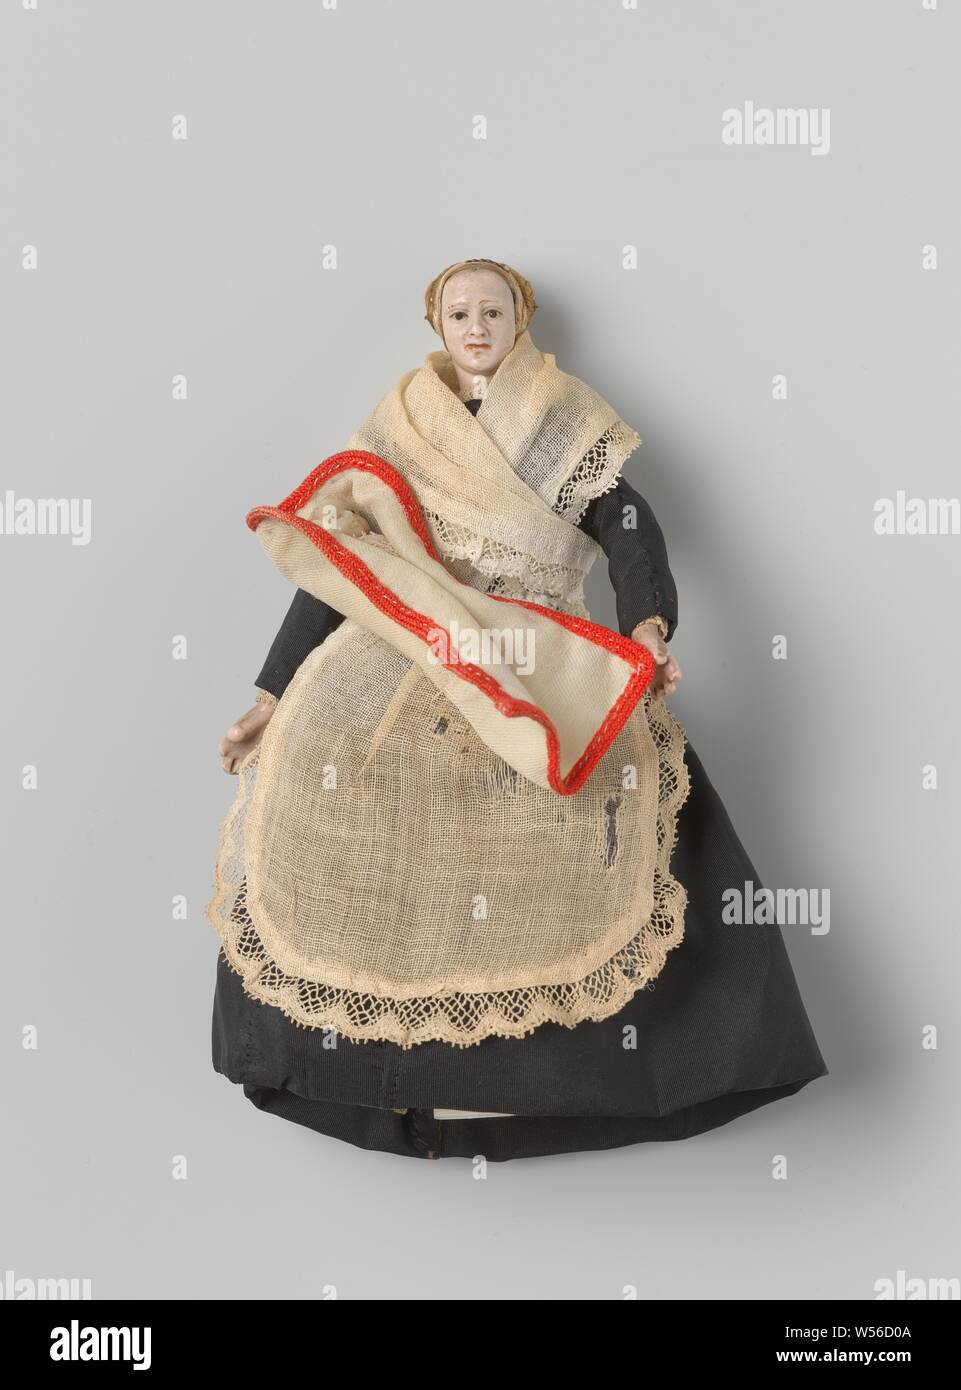 Puppe, die ein Kind in einem Wrap, ein Wrap Kind, Puppe aus Wachs (für Perücke?) mit Augen schwarz, Bohrung an der Oberseite des Kopfes gemalt, Körper, ohne Arme und Beine, in der Spitze über ein Bettwäsche Schicht gewickelt. In einen Schal aus weißer Wolle mit einem roten Band genäht., anonym, Amsterdam (möglicherweise), C. 1700 - C. 1799, Wachs, Wolle, Leinen (Material), l 4,0 cm l 9,0 cm Stockfoto